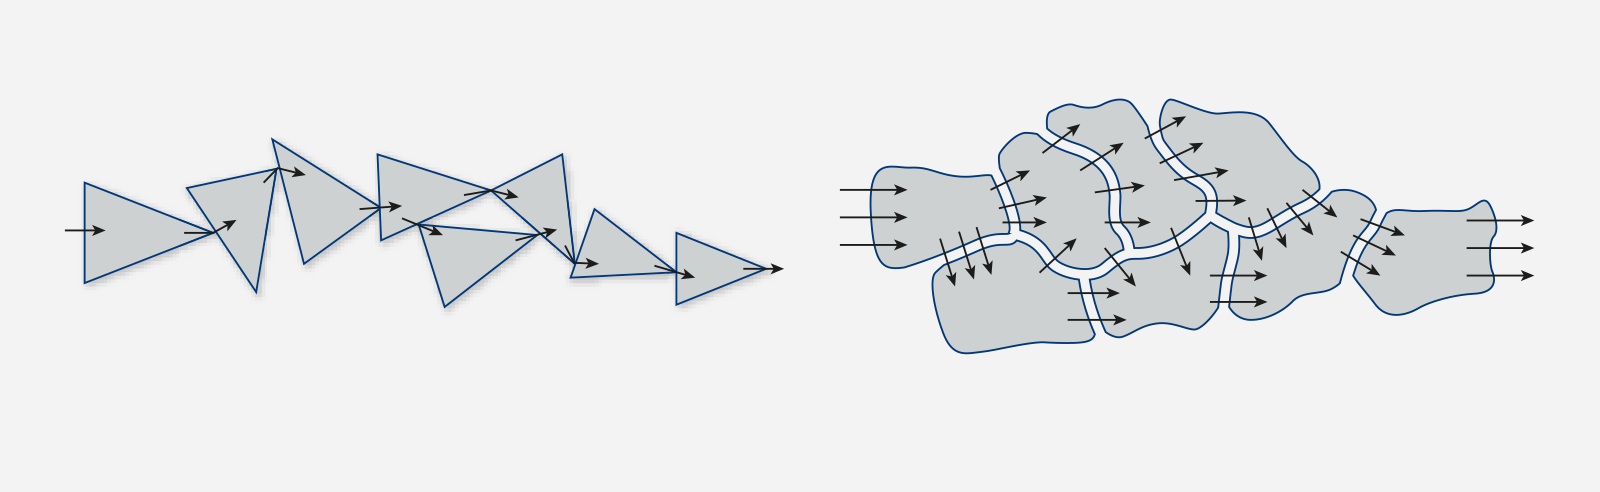 Links: Die Geräuschentwicklung ist am größten, wenn der Strom durch Punkt-zu-Punkt-Kontakte fließt, wie in einer Partikel-Matrix dargestellt. Rechts: Die Rauschentwicklung ist minimal, wenn der Strom über mehrere Pfade fließt, wie es bei einer Metallfolie